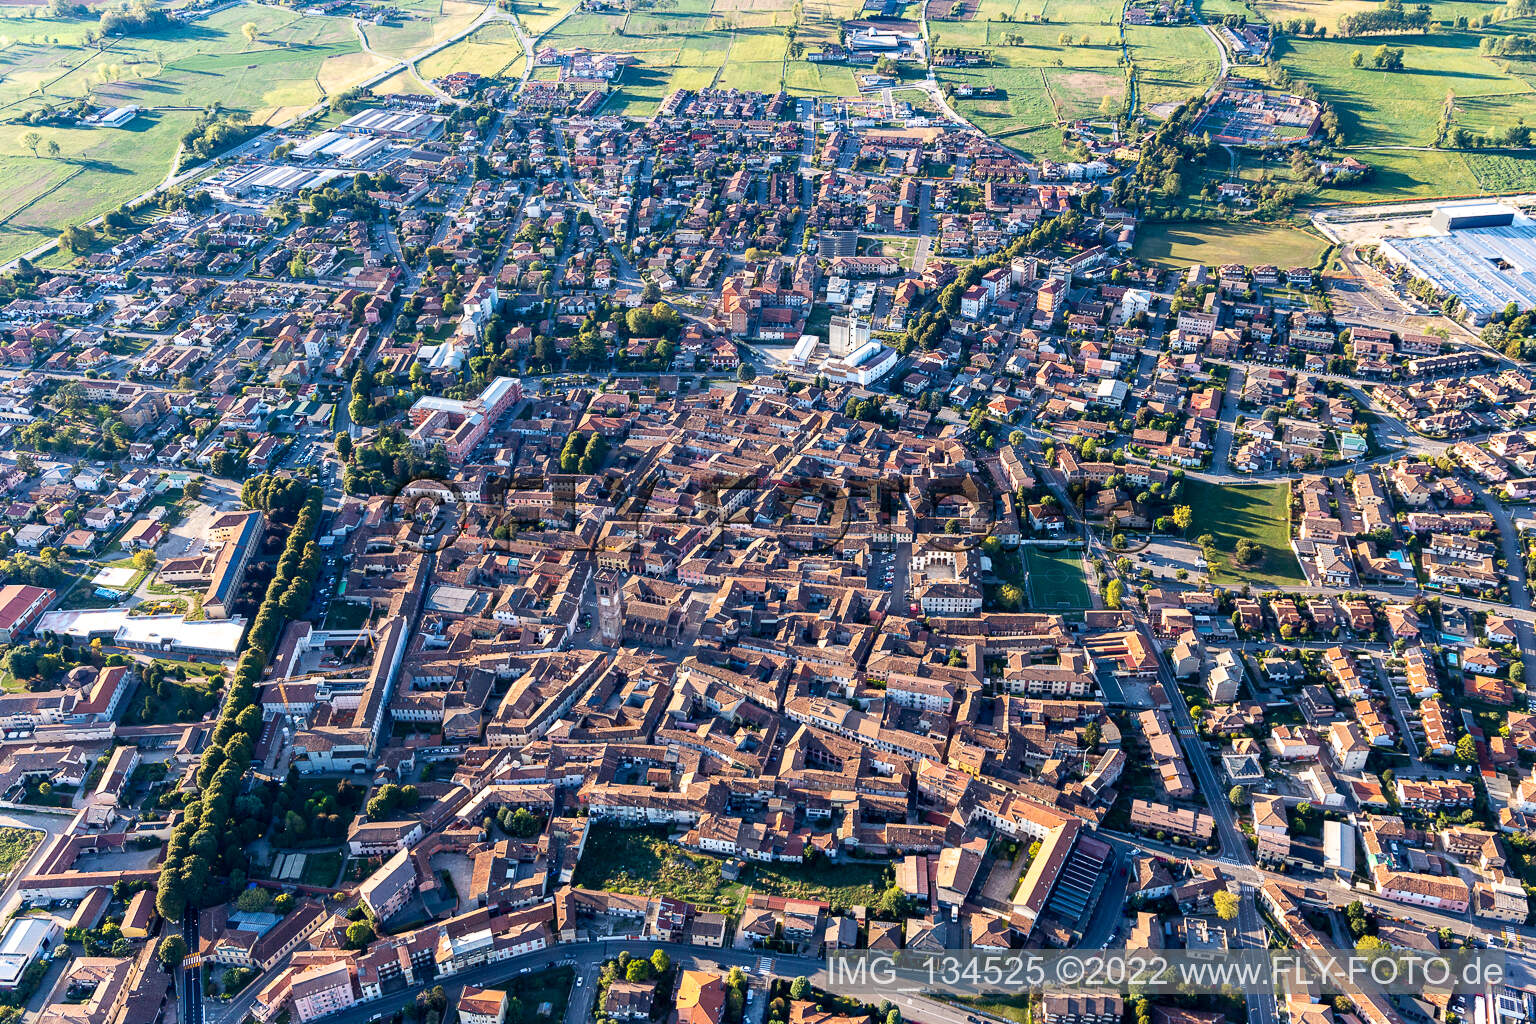 Vue aérienne de Rivolta d’Adda dans le département Cremona, Italie